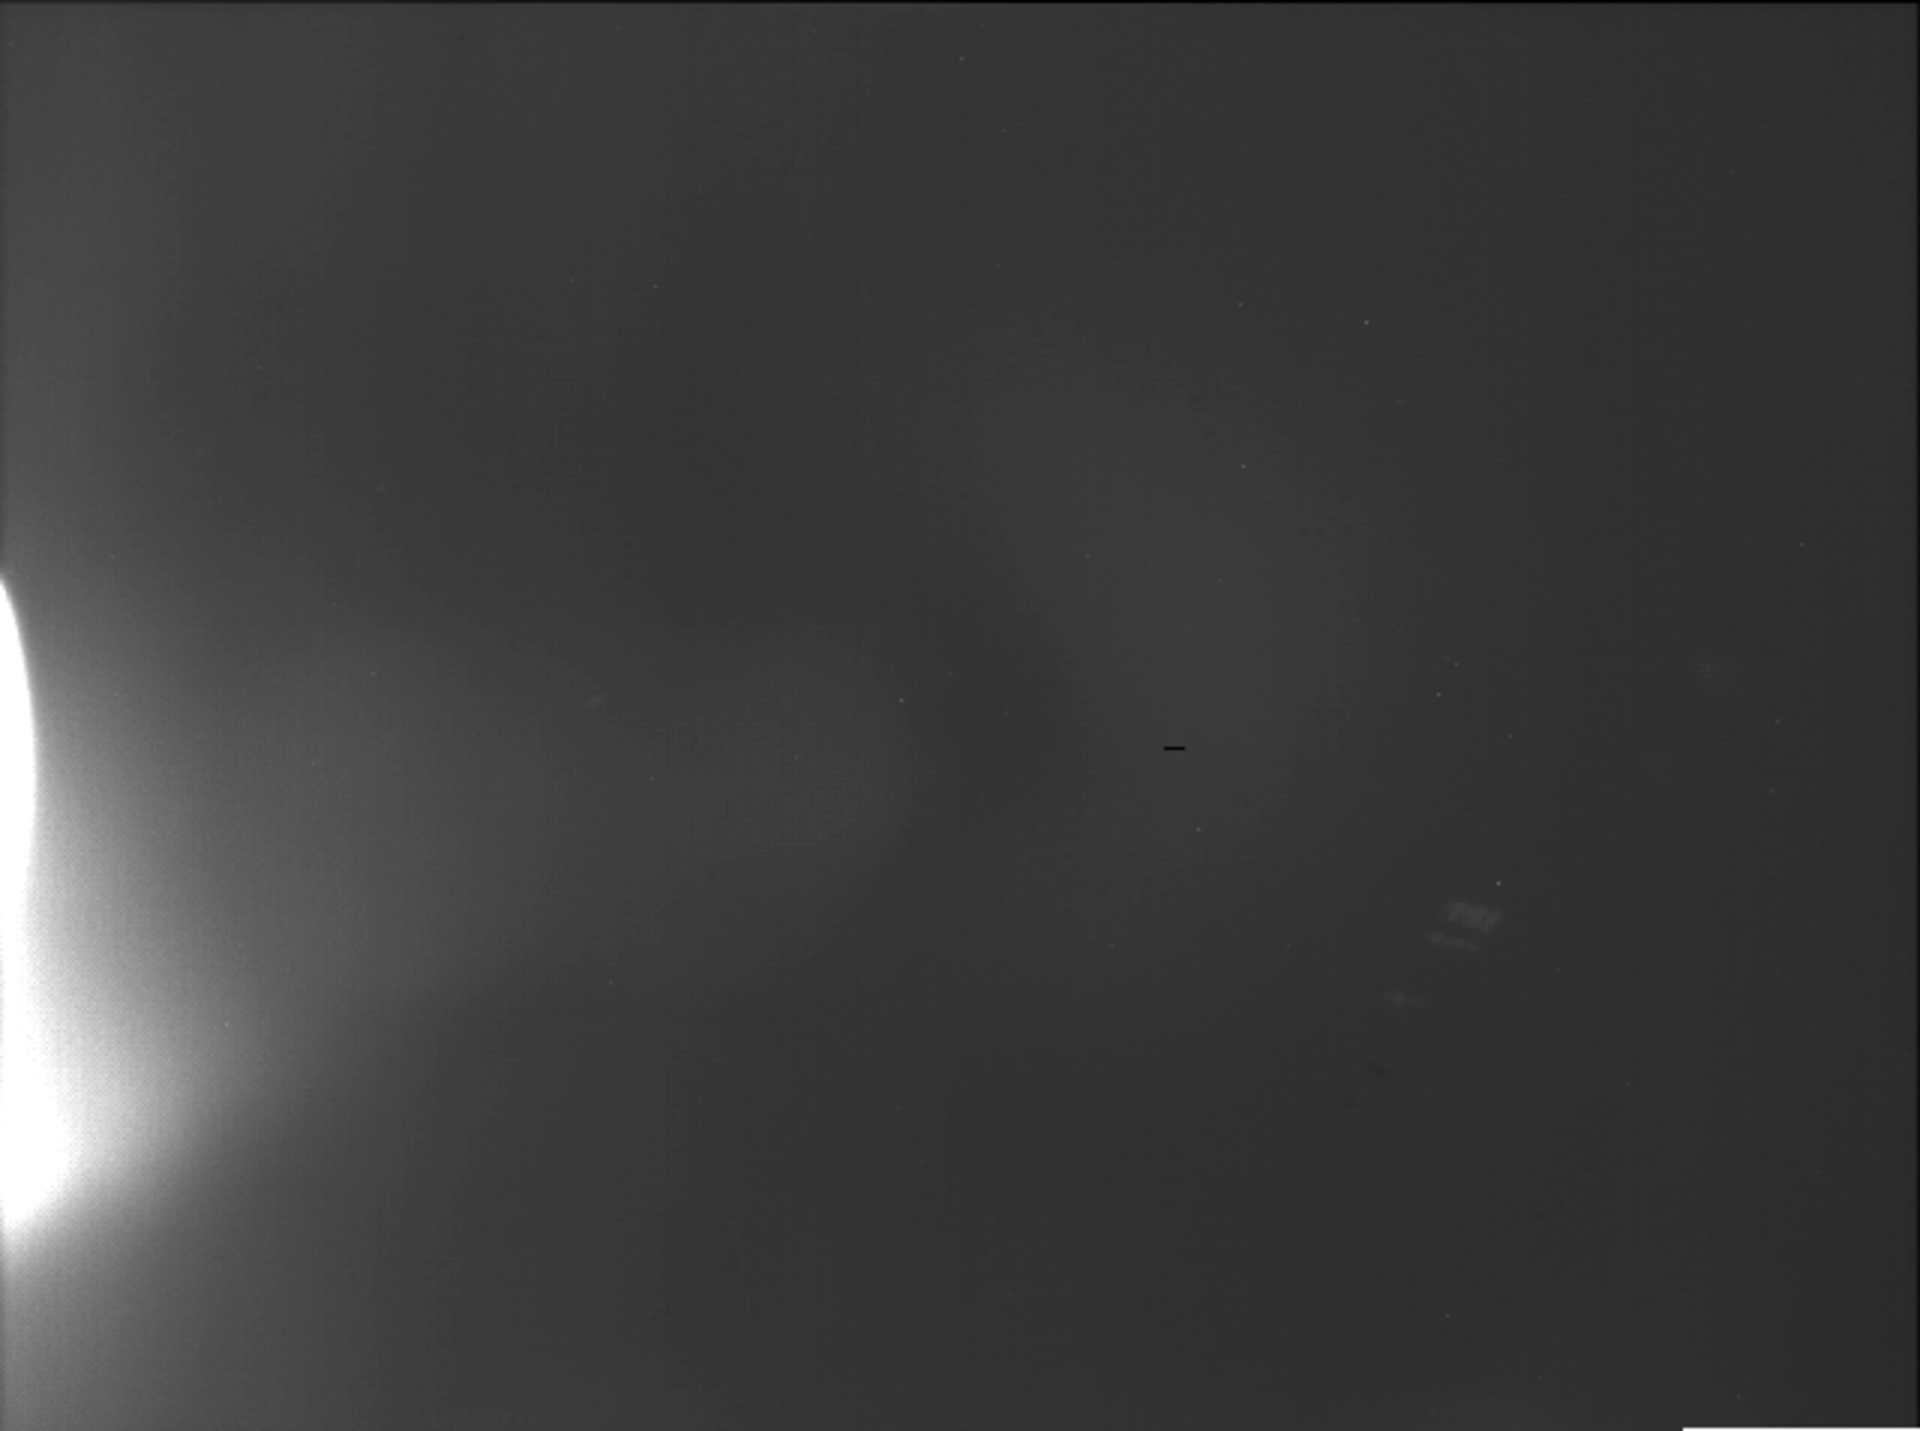 VMC - First light from Mars (38° error!) 28 Jan 2007